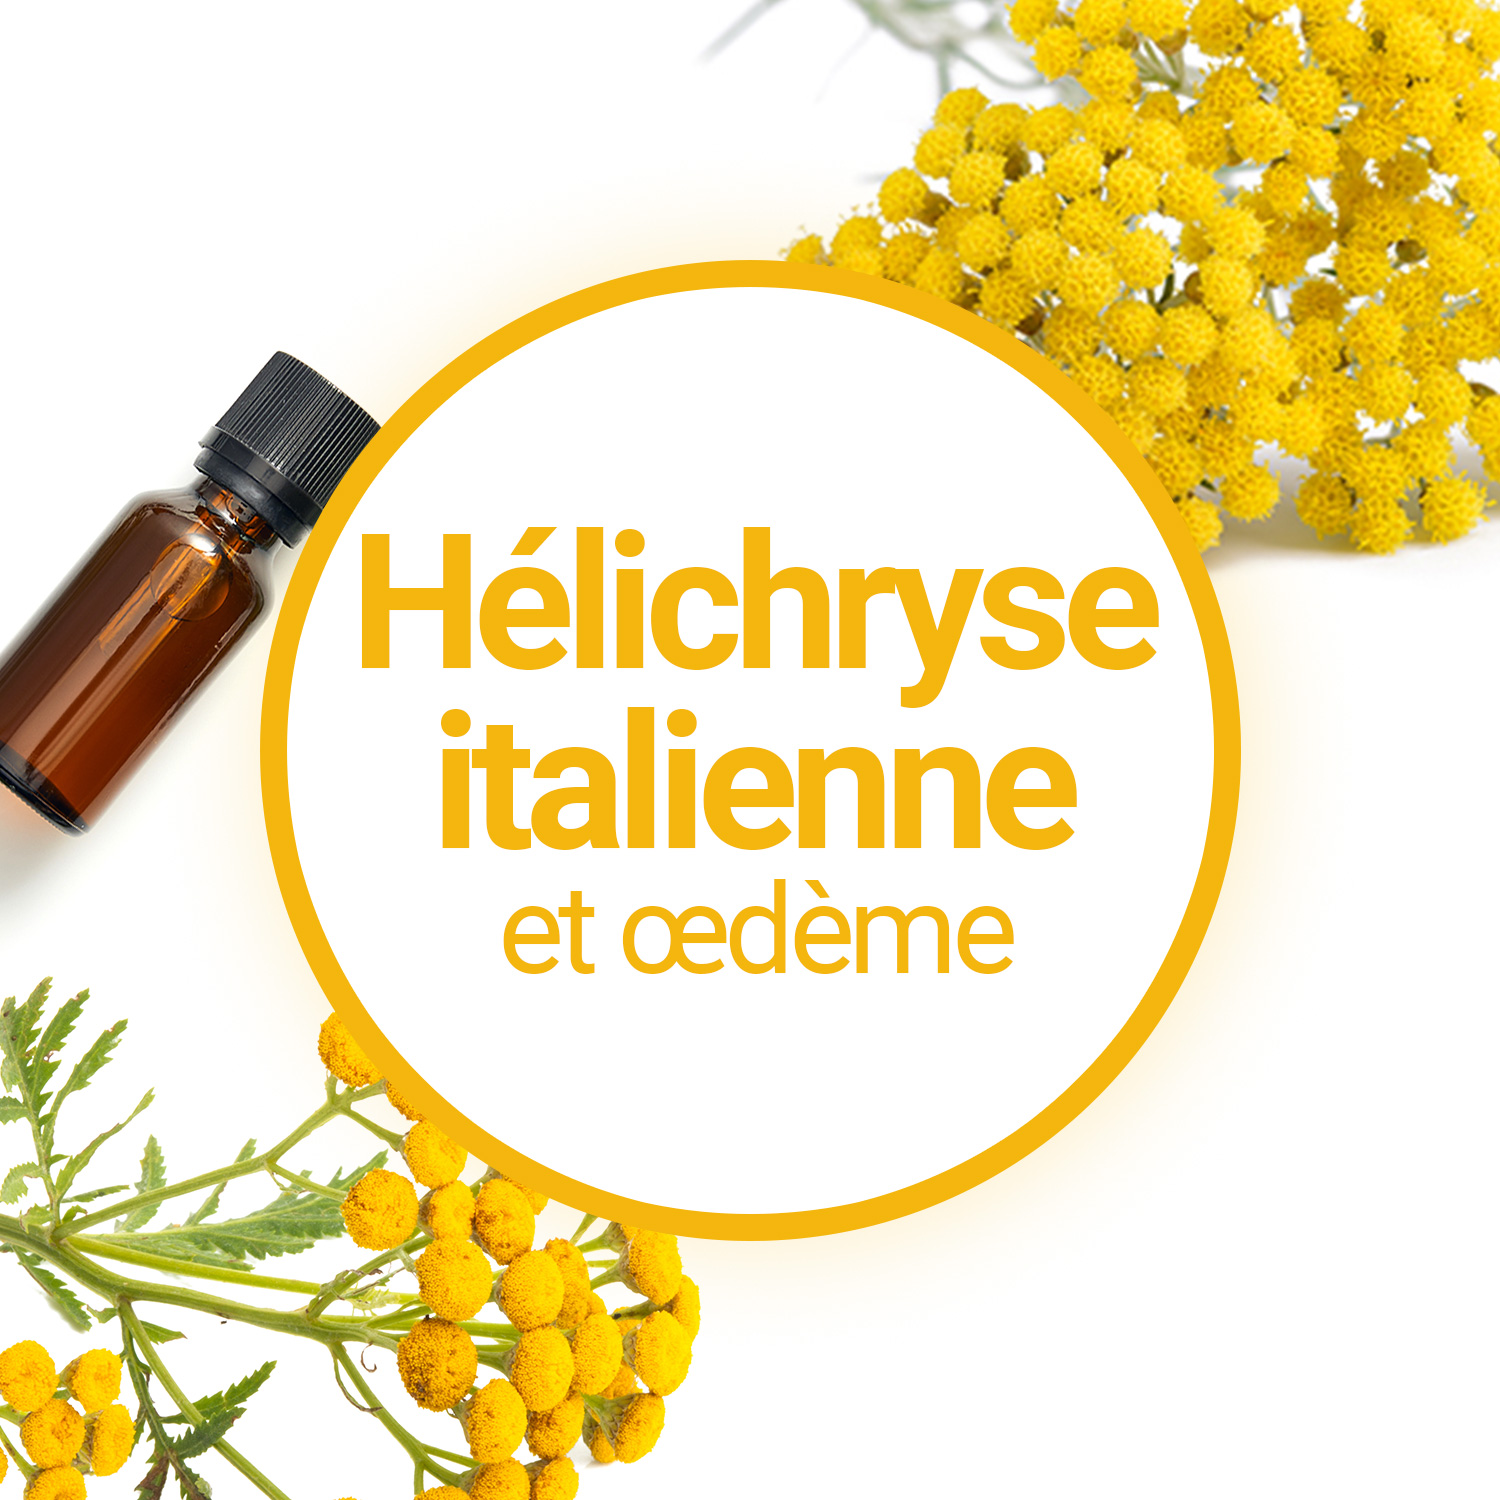 Une huile essentielle de choc : l'hélichryse italienne